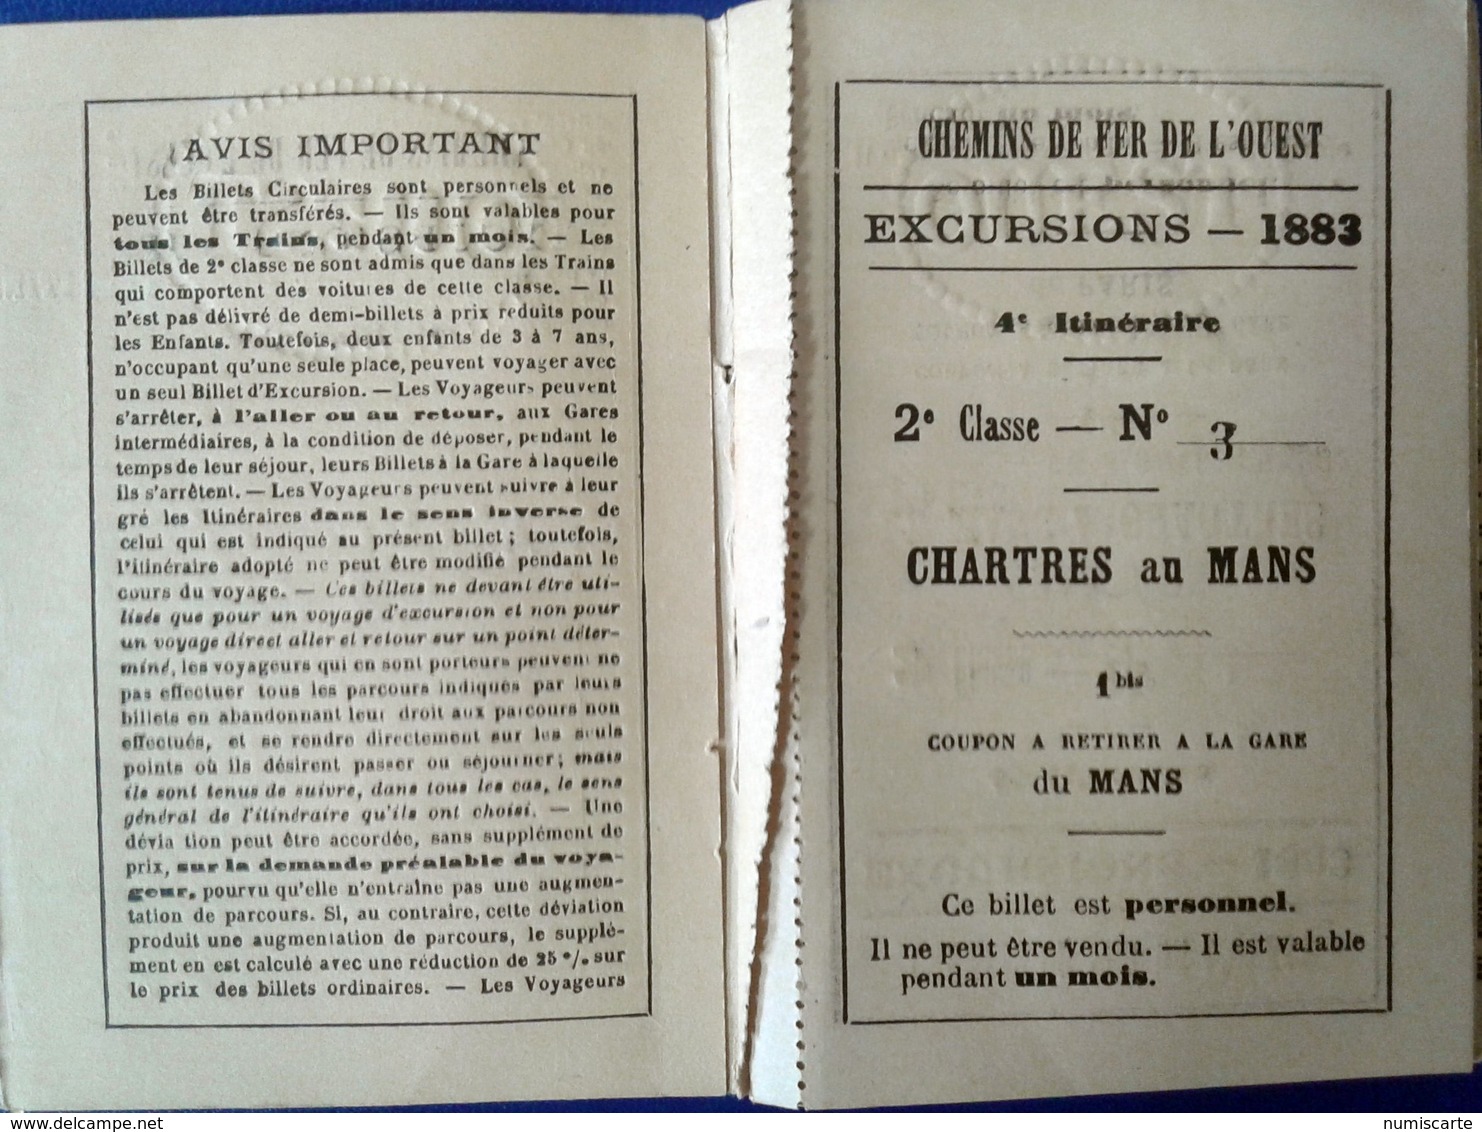 CHEMINS DE FER DE L OUEST - Excursions sur les Côtes de Normandie et en Bretagne - 1883